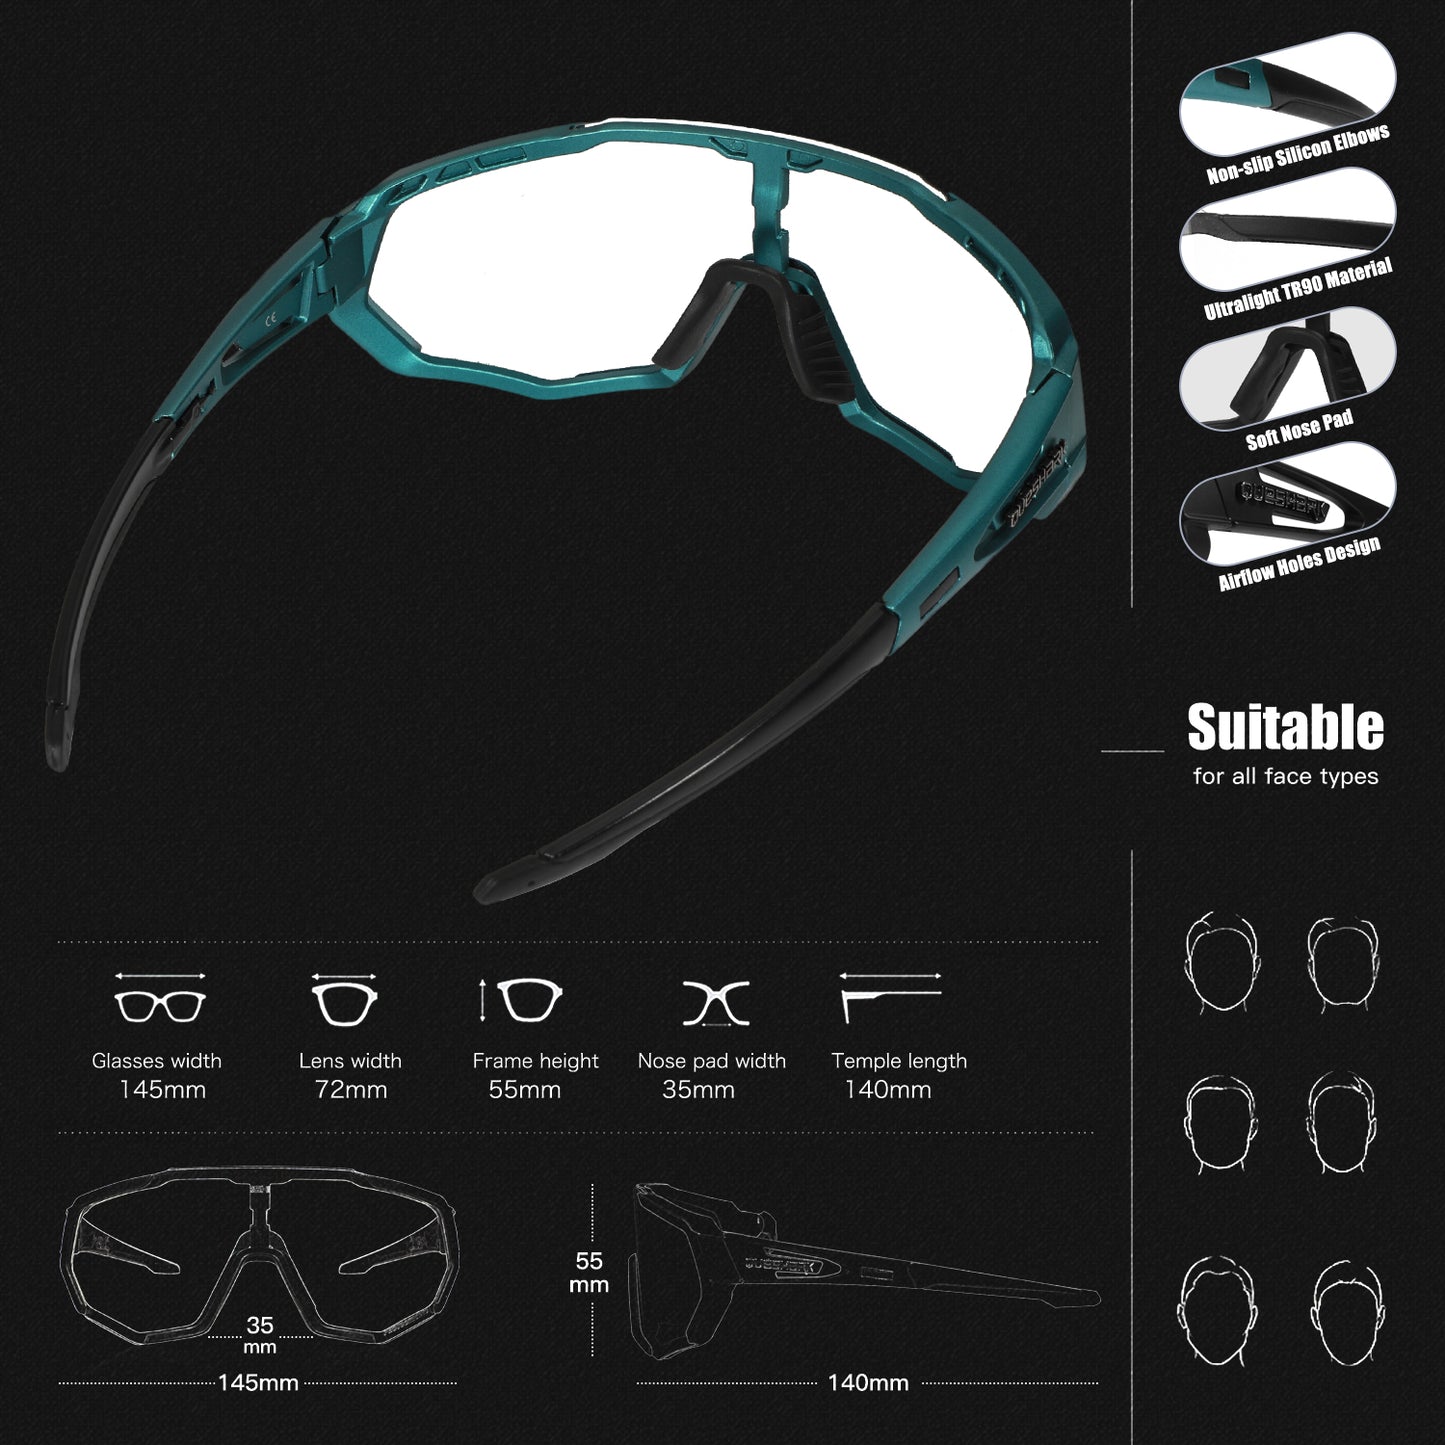 QE48 BS Queshark lunettes de soleil photochromiques pour hommes femmes lunettes de cyclisme de sécurité Protection UV sport de plein air vtt DDL